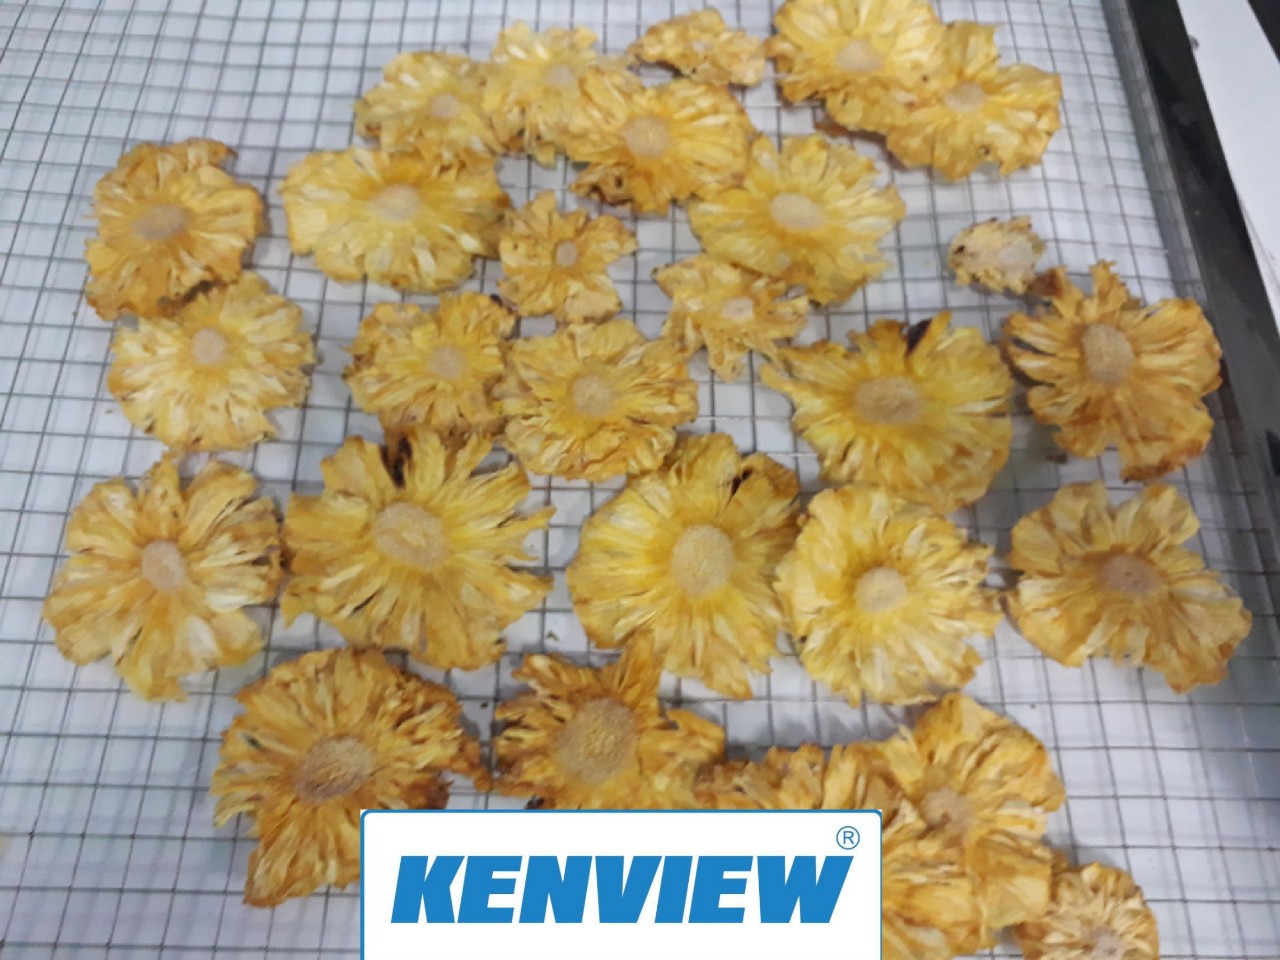 Cung cấp máy sấy trái cây kenview – Phan Rang